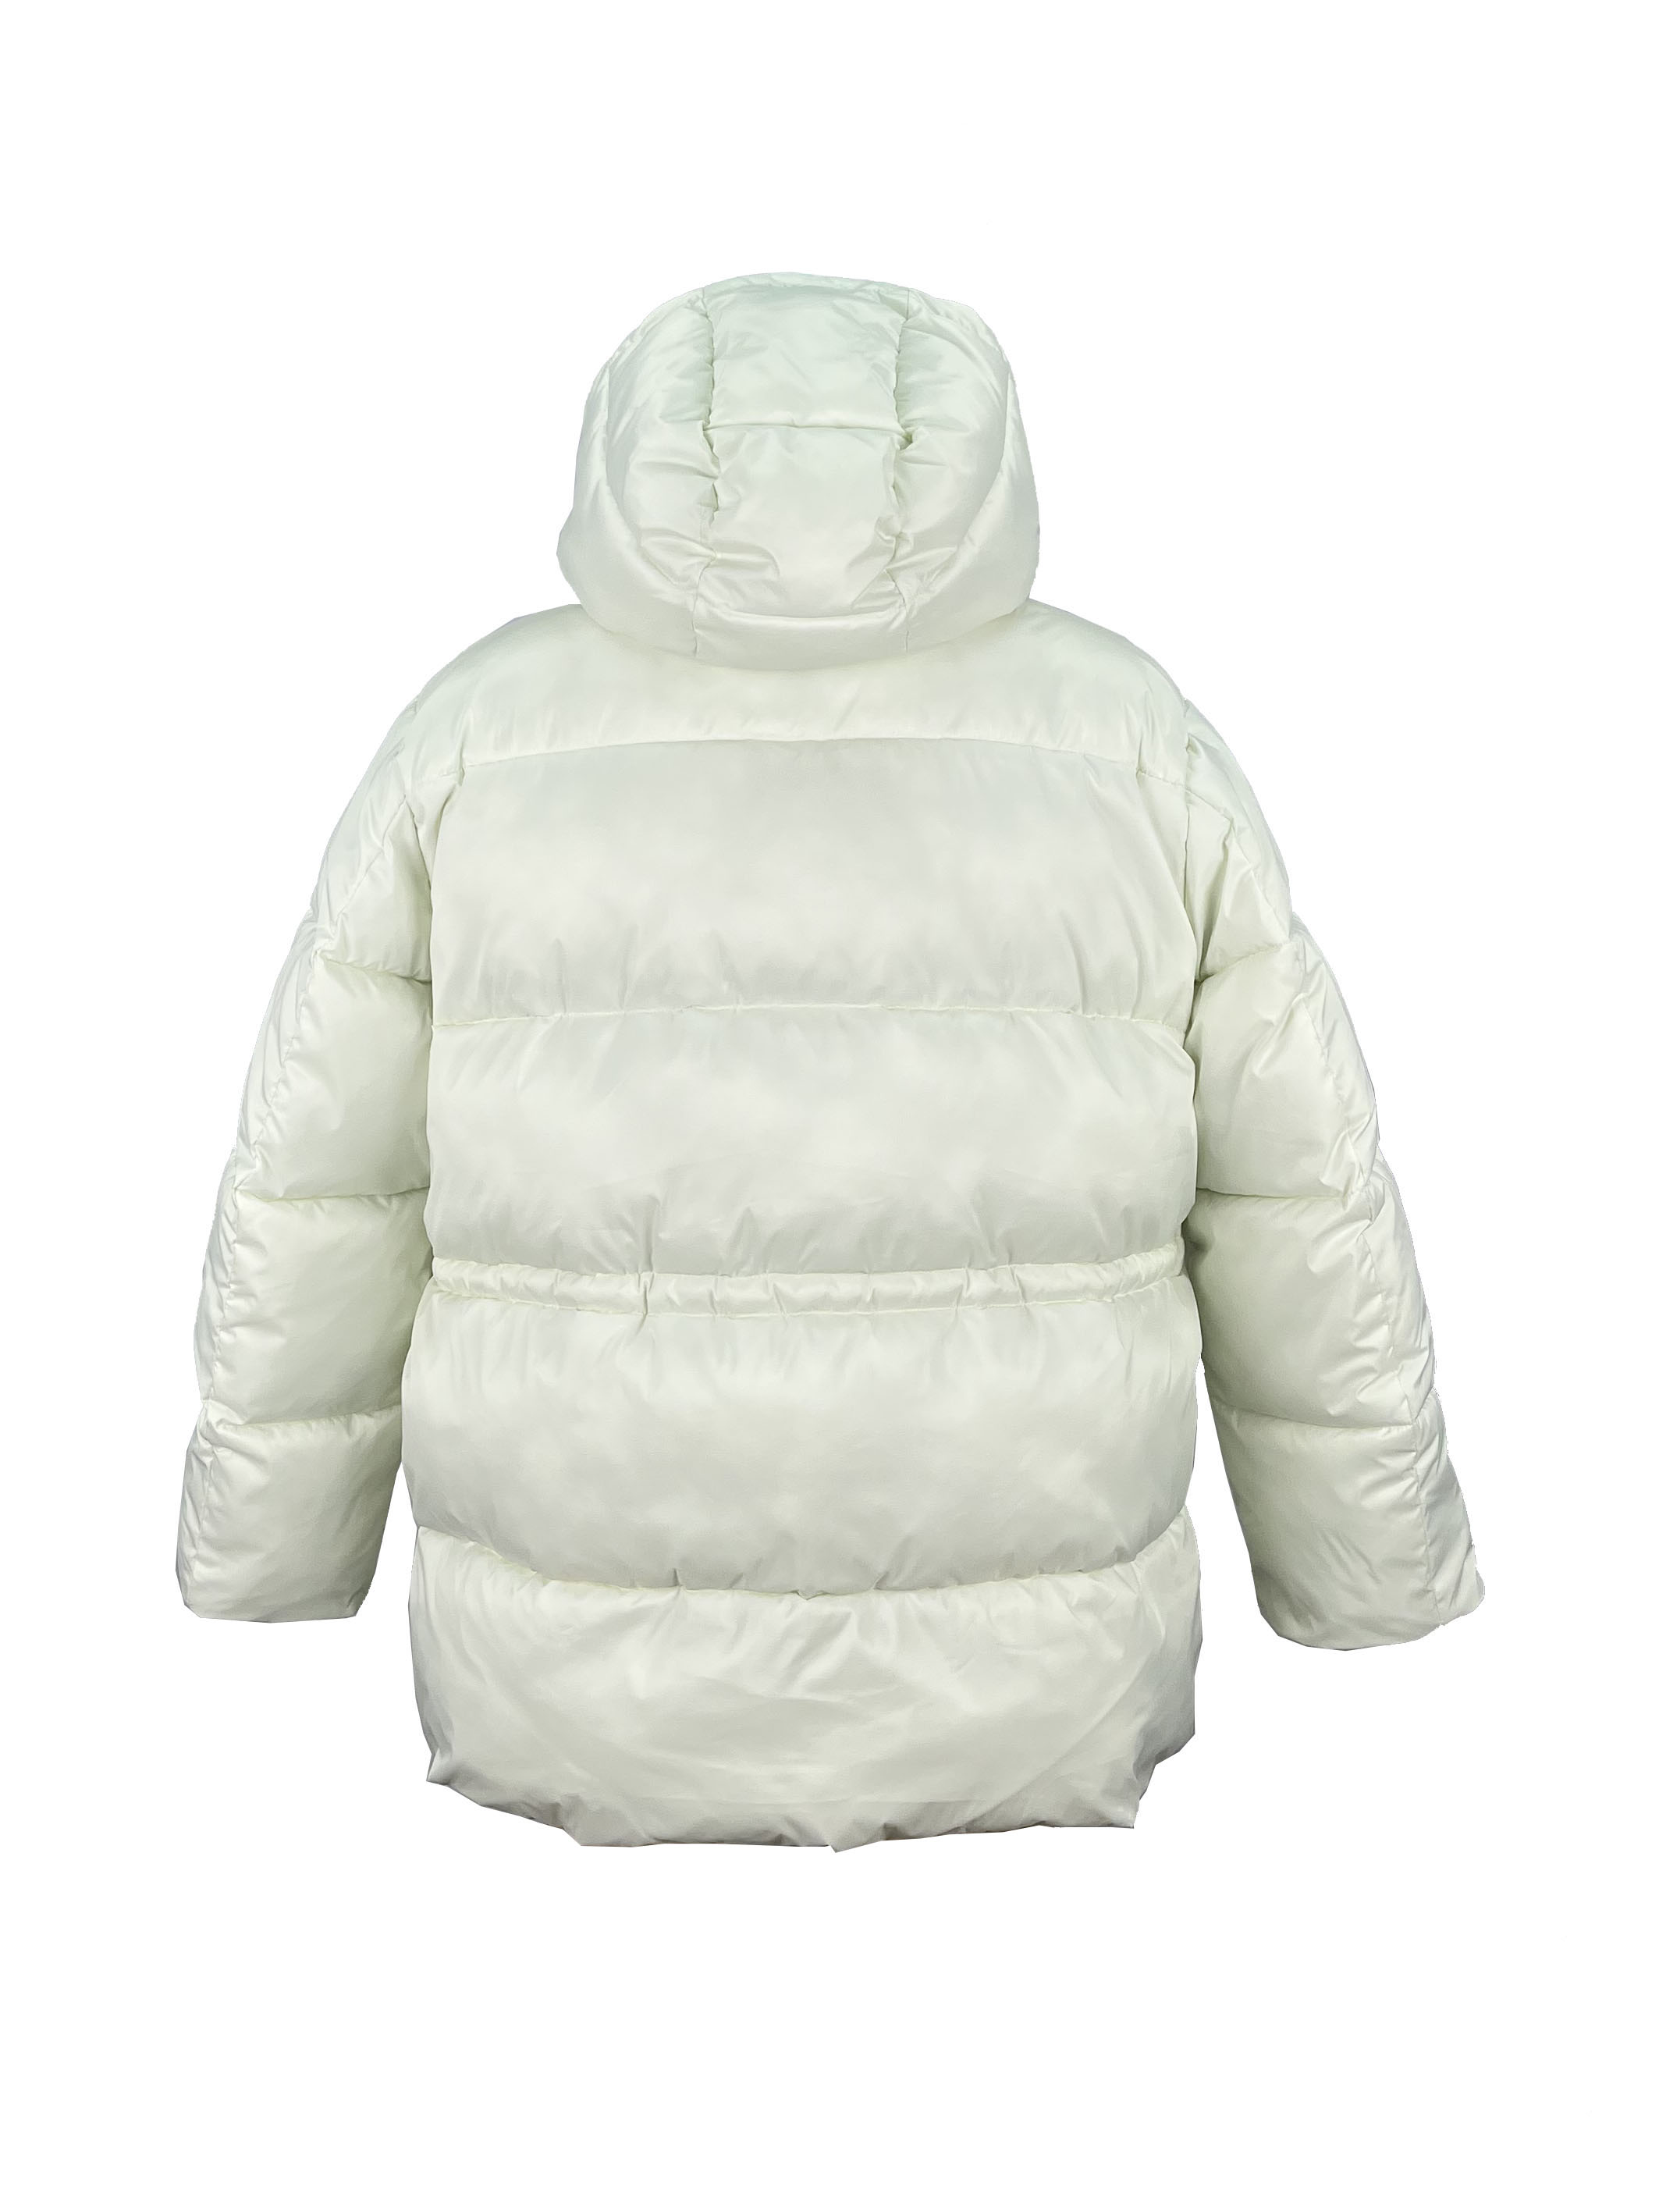 1.padded jacket (2)